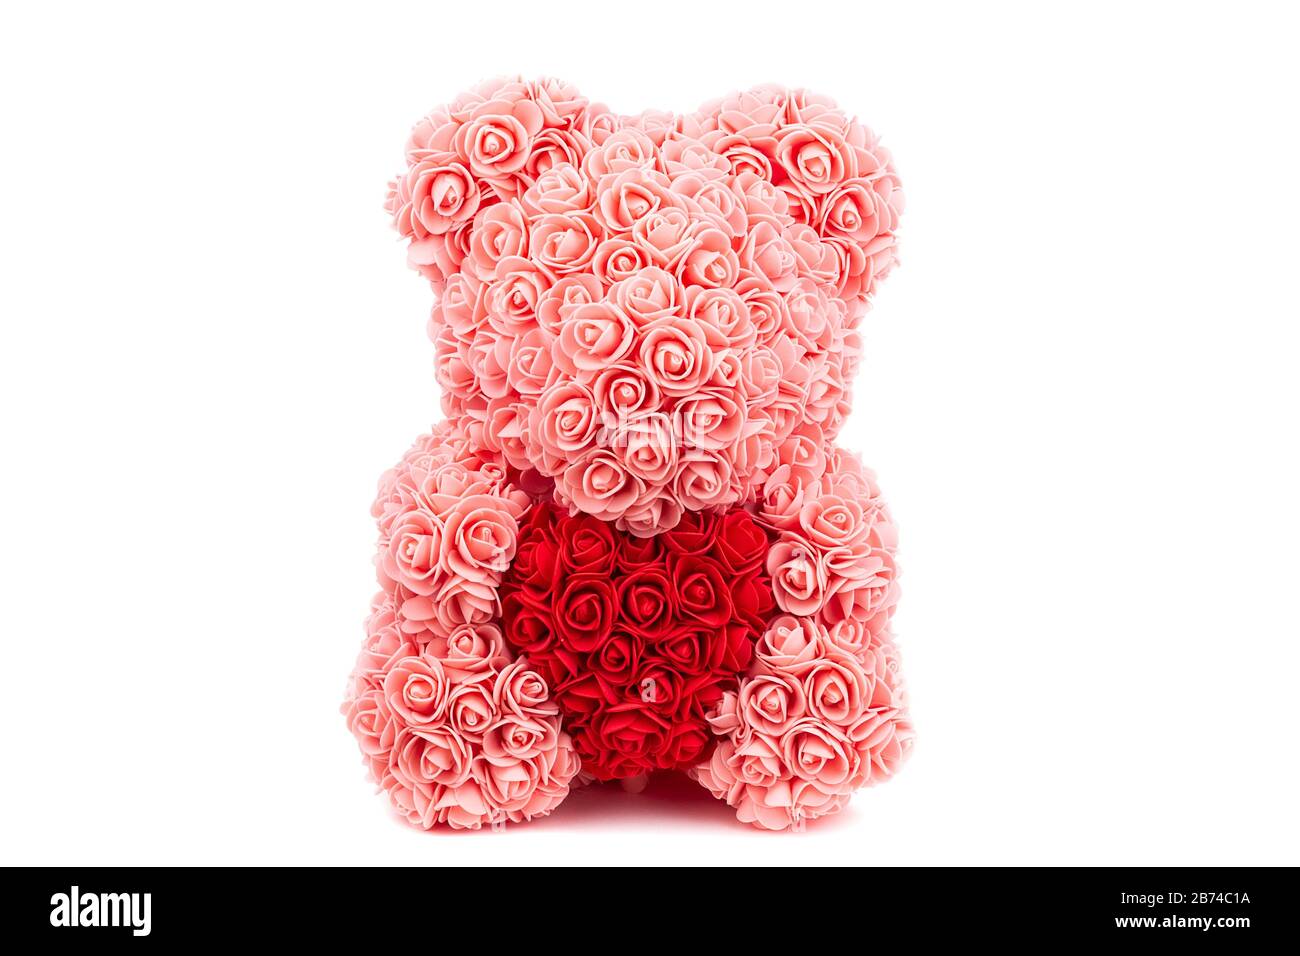 Cartolina al giorno degli amanti. Orso Teddy di rose rosa tiene un cuore rosso nelle sue mani su uno sfondo bianco Foto Stock